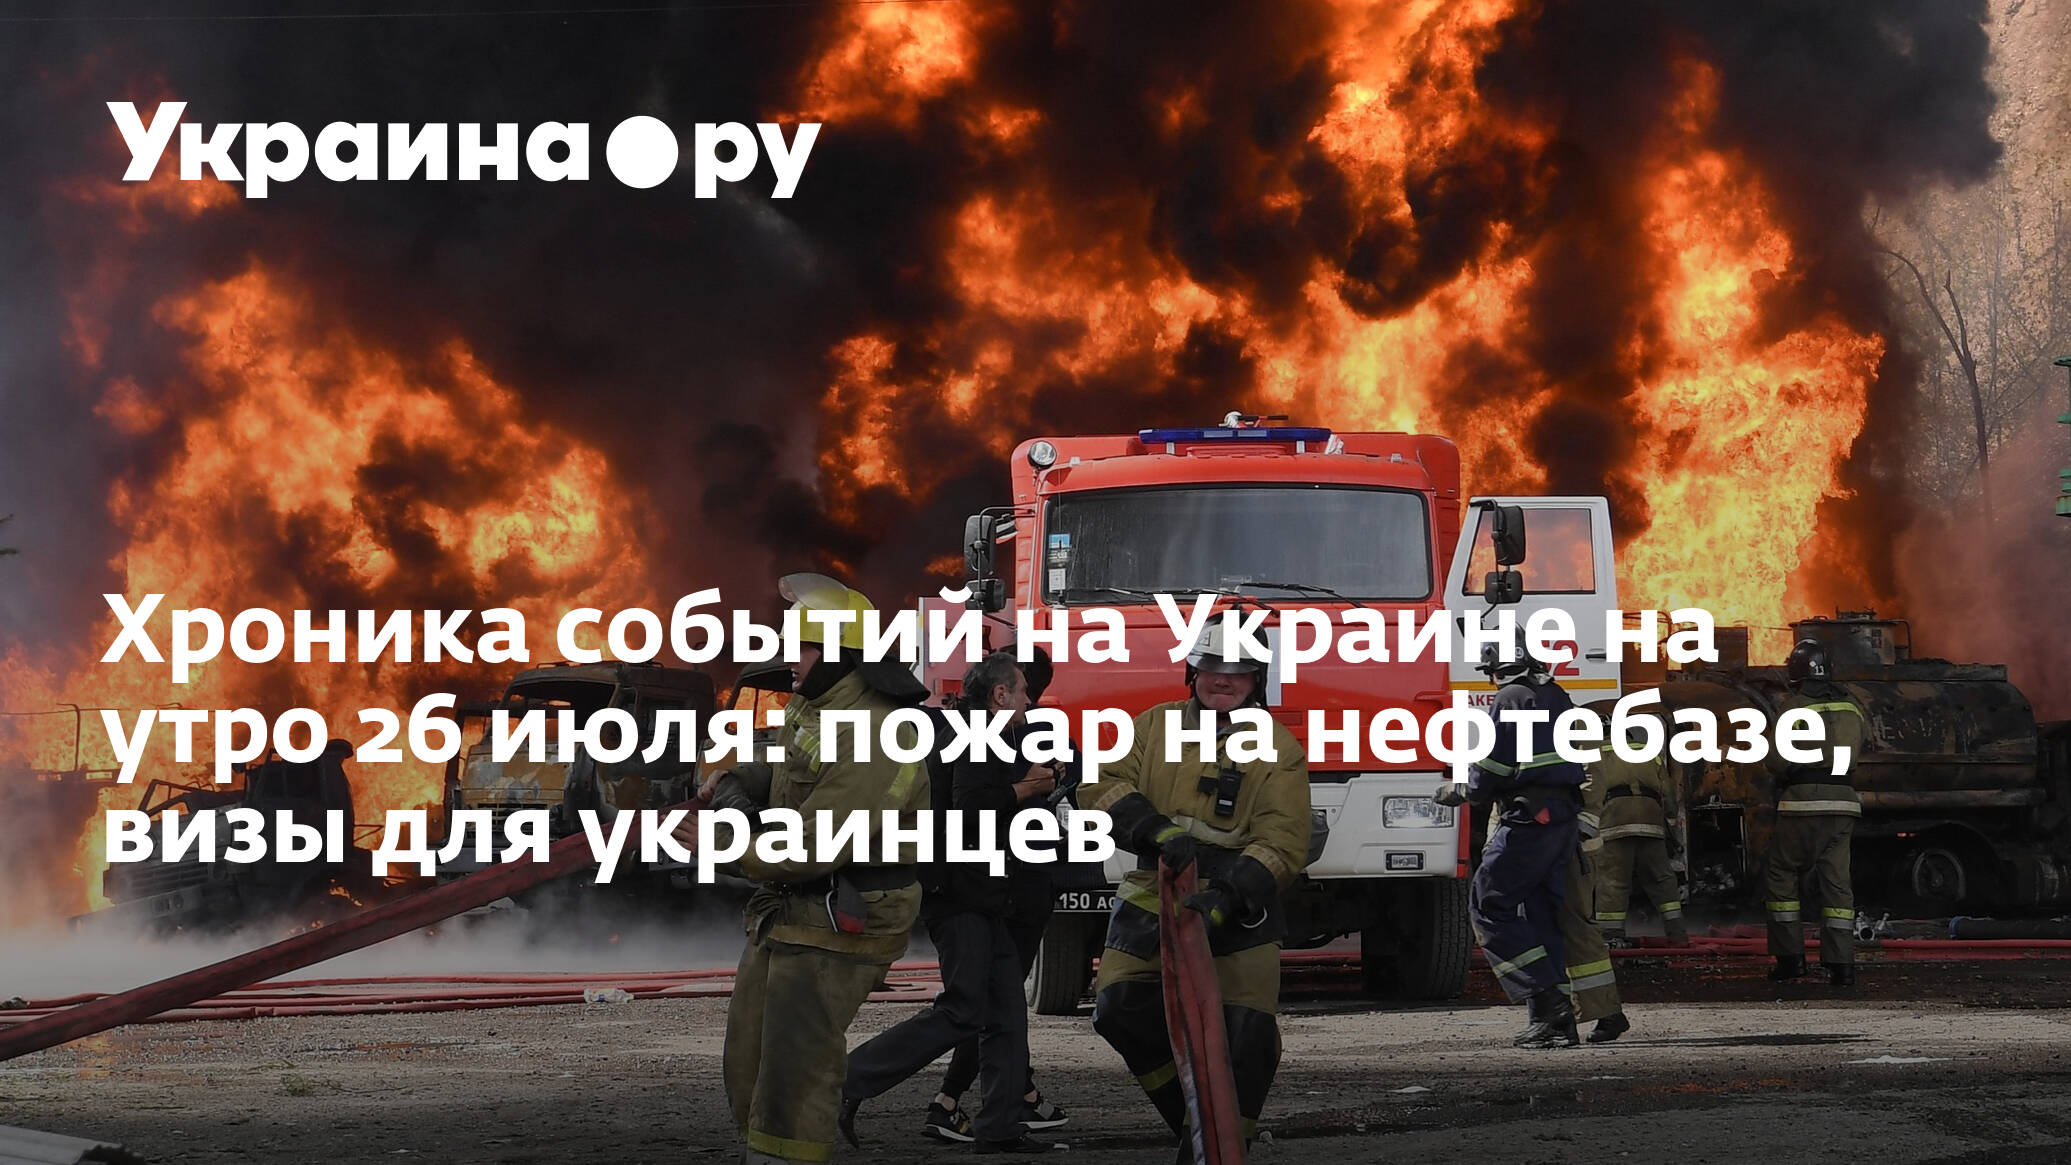 Пепел клааса стучит. Пожар на нефтебазе в Донецке фото и видео. Трагедия в Макеевке фото. Трагедия в Макеевке в новогоднюю ночь.